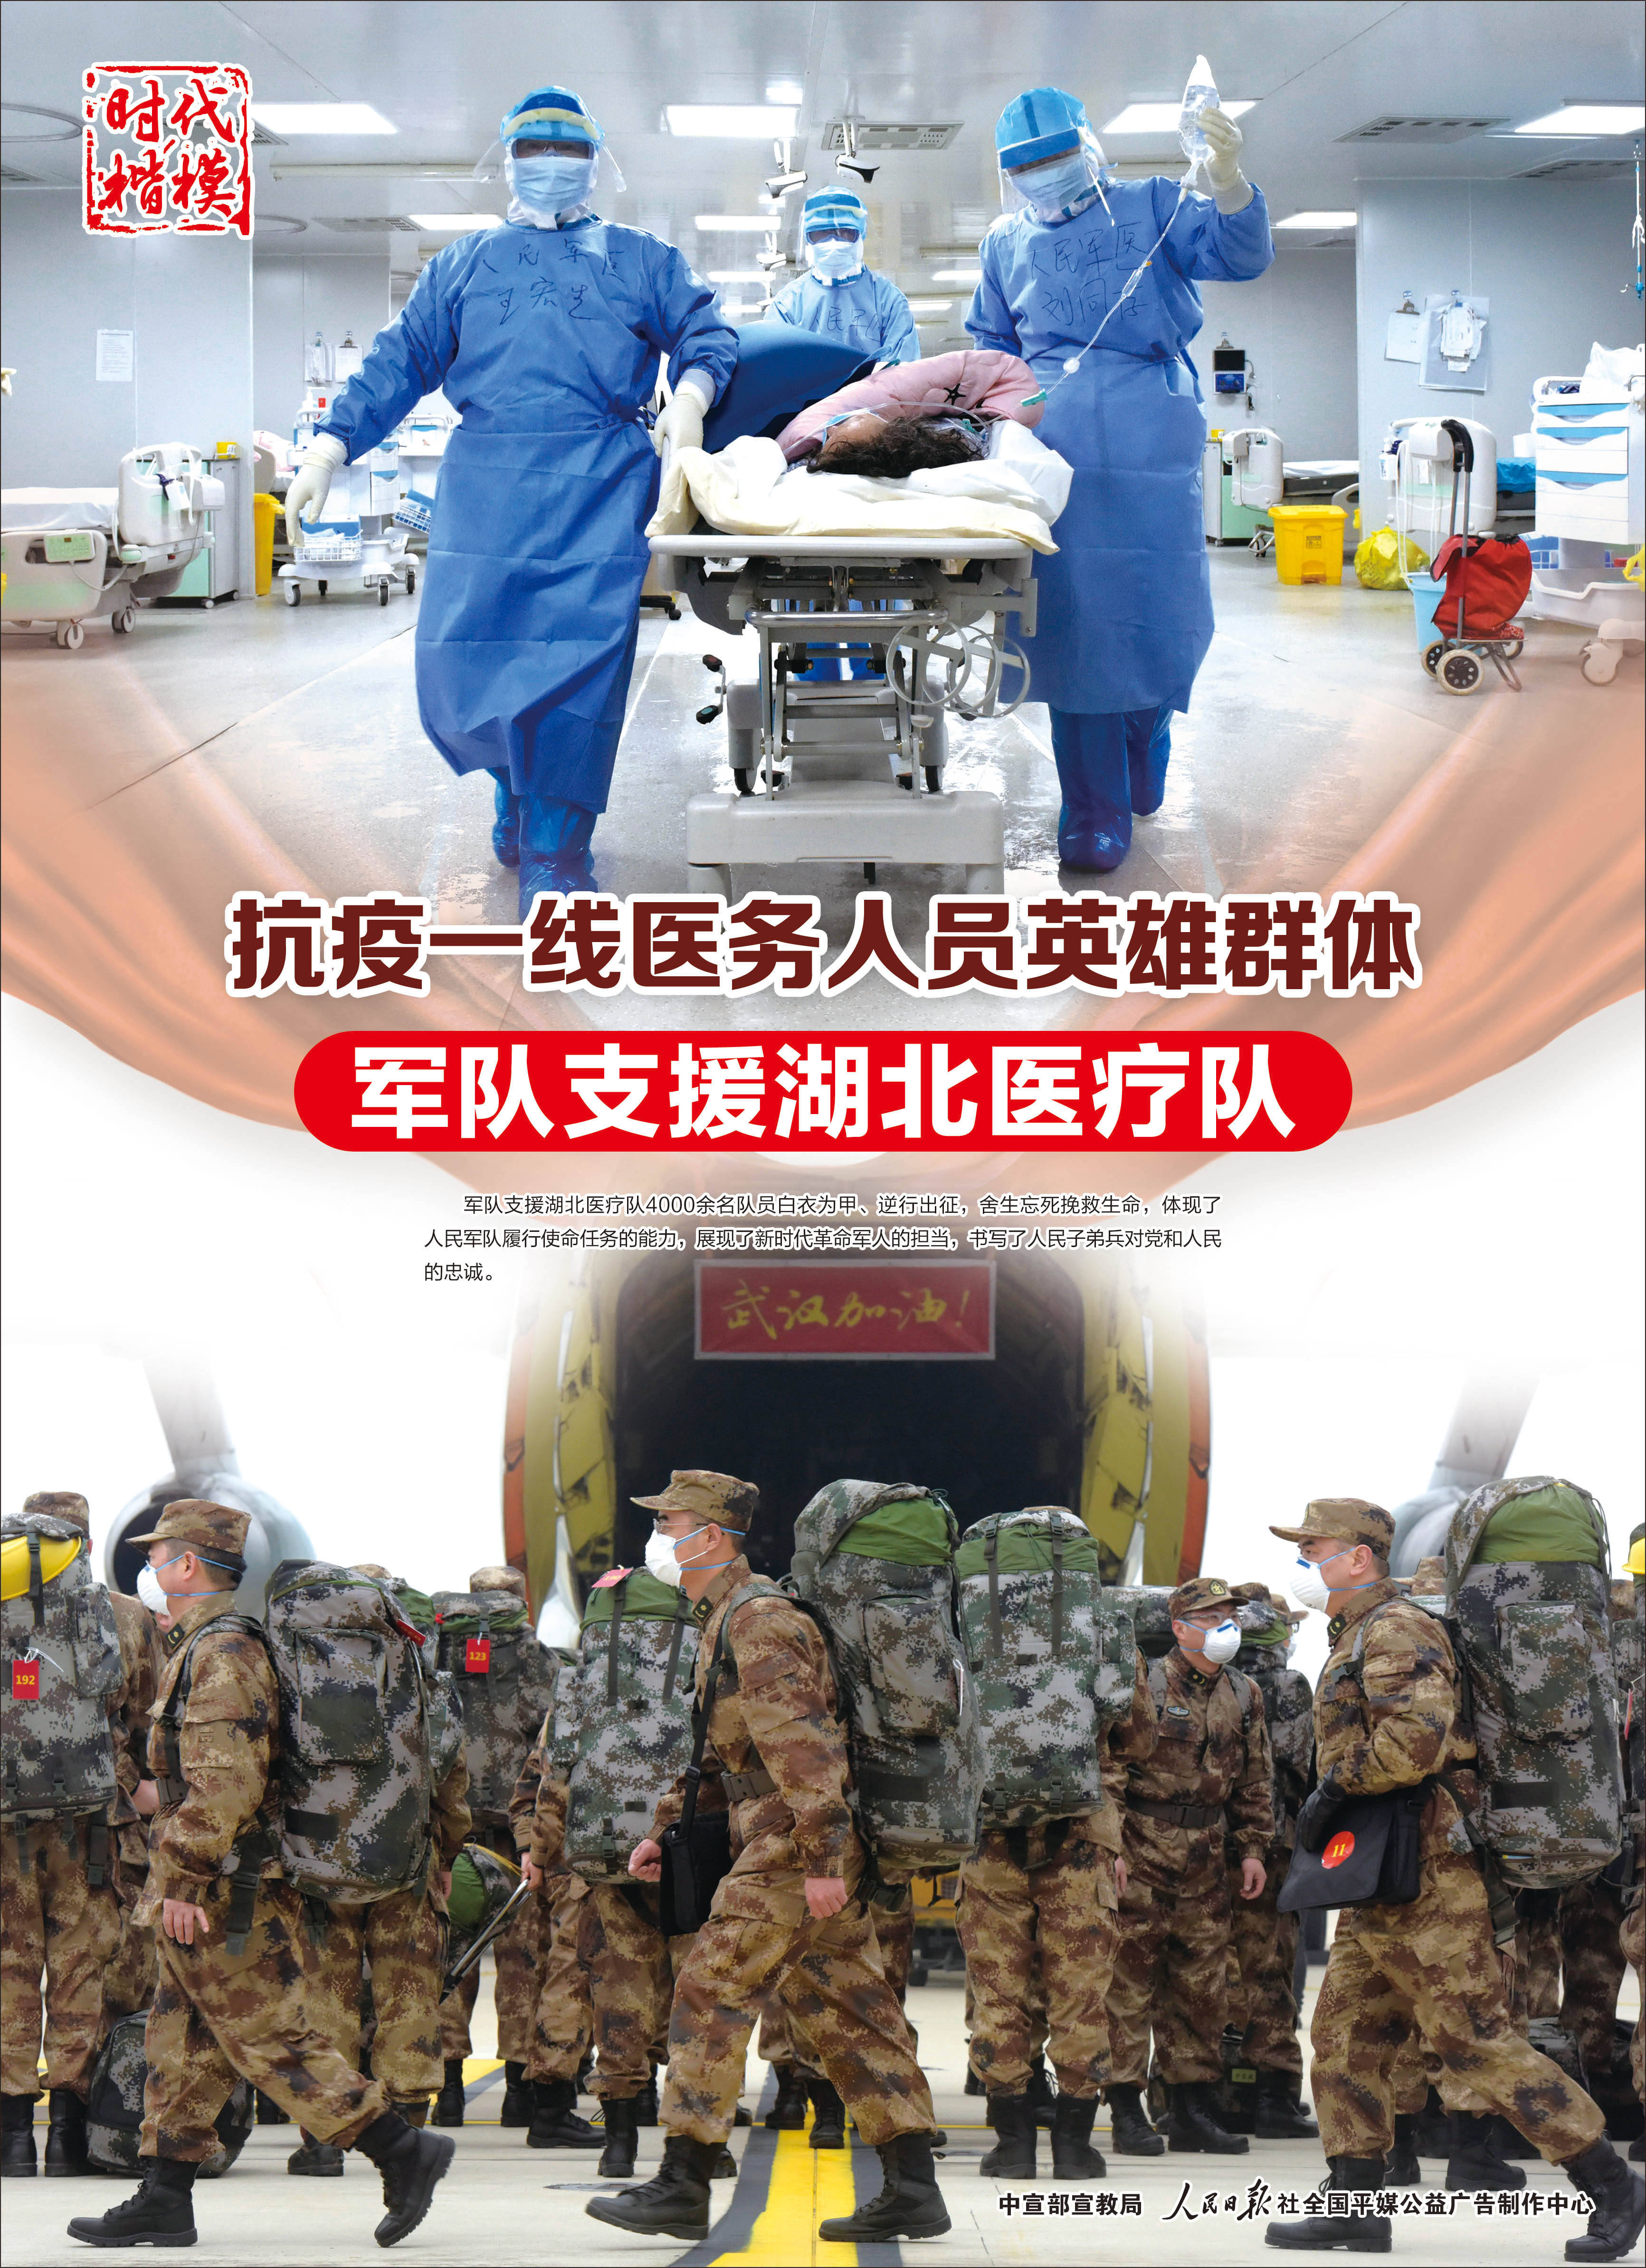 新华社照片,北京,2021年2月10日 抗疫一线医务人员英雄群体——军队